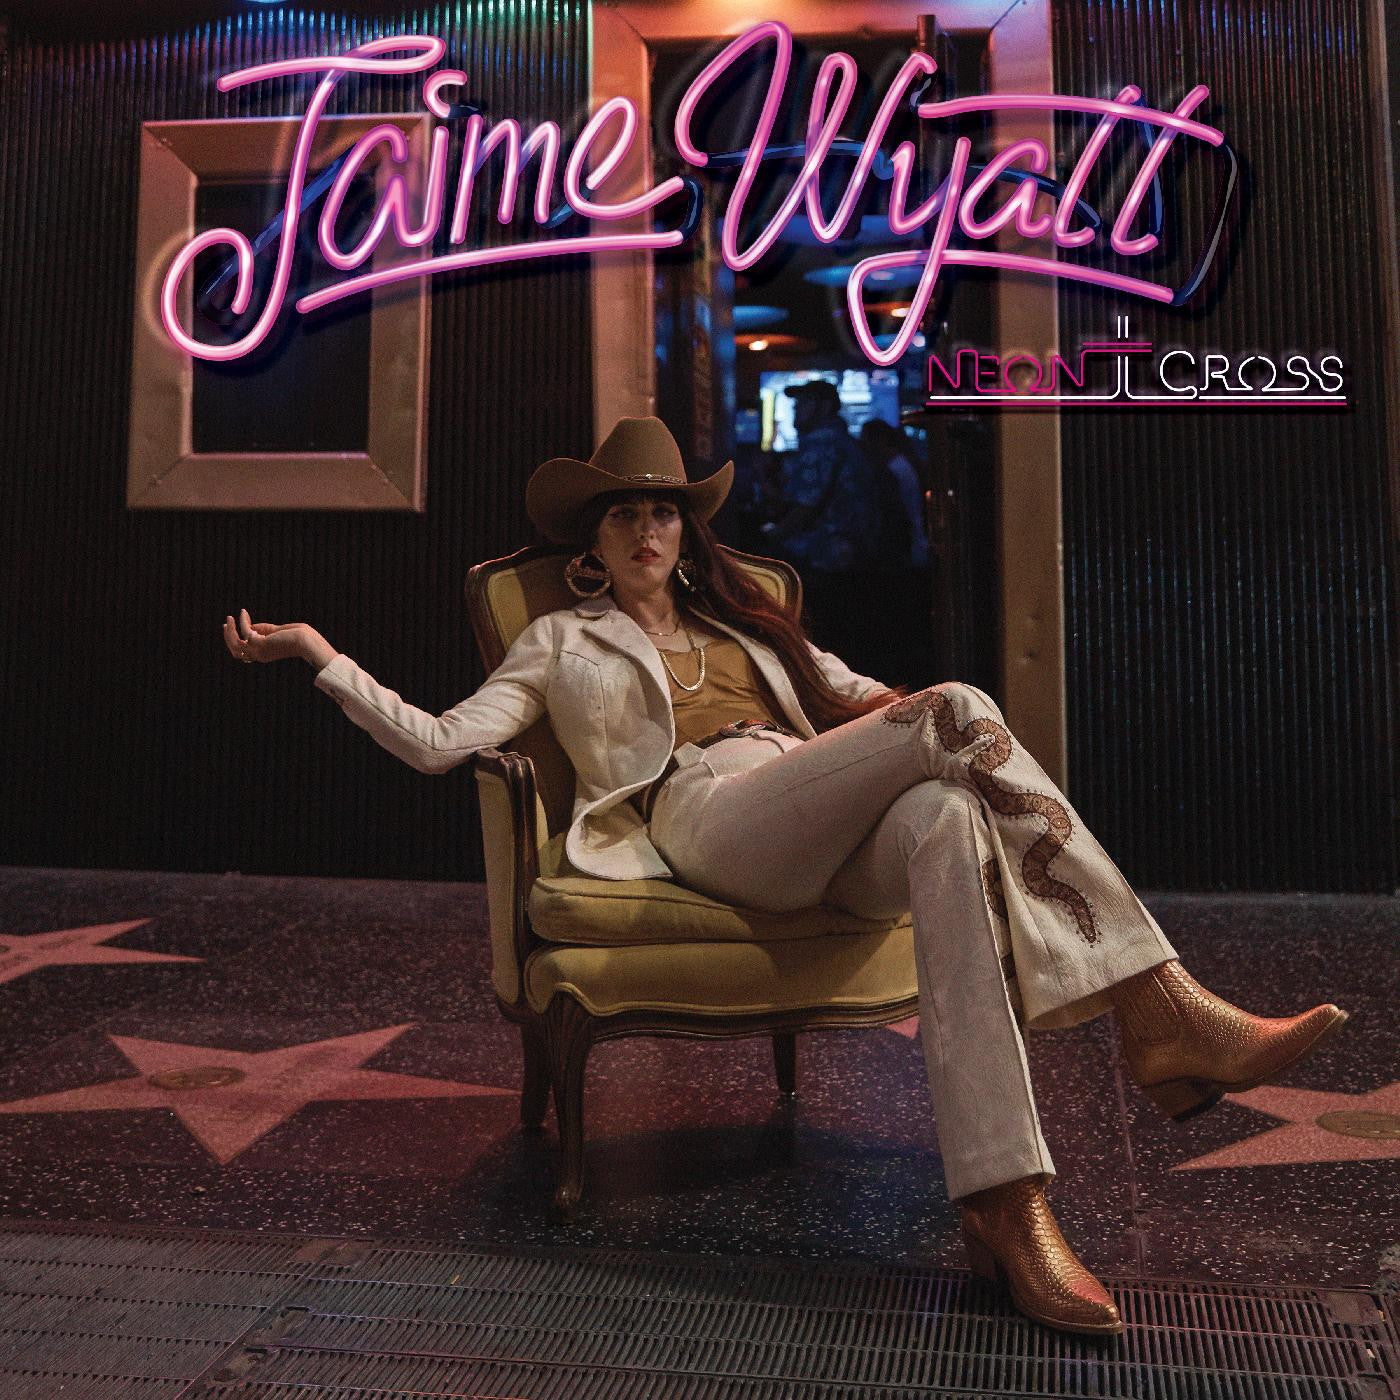 Jaime Wyatt - Neon Cross [Cream Swirl Vinyl]